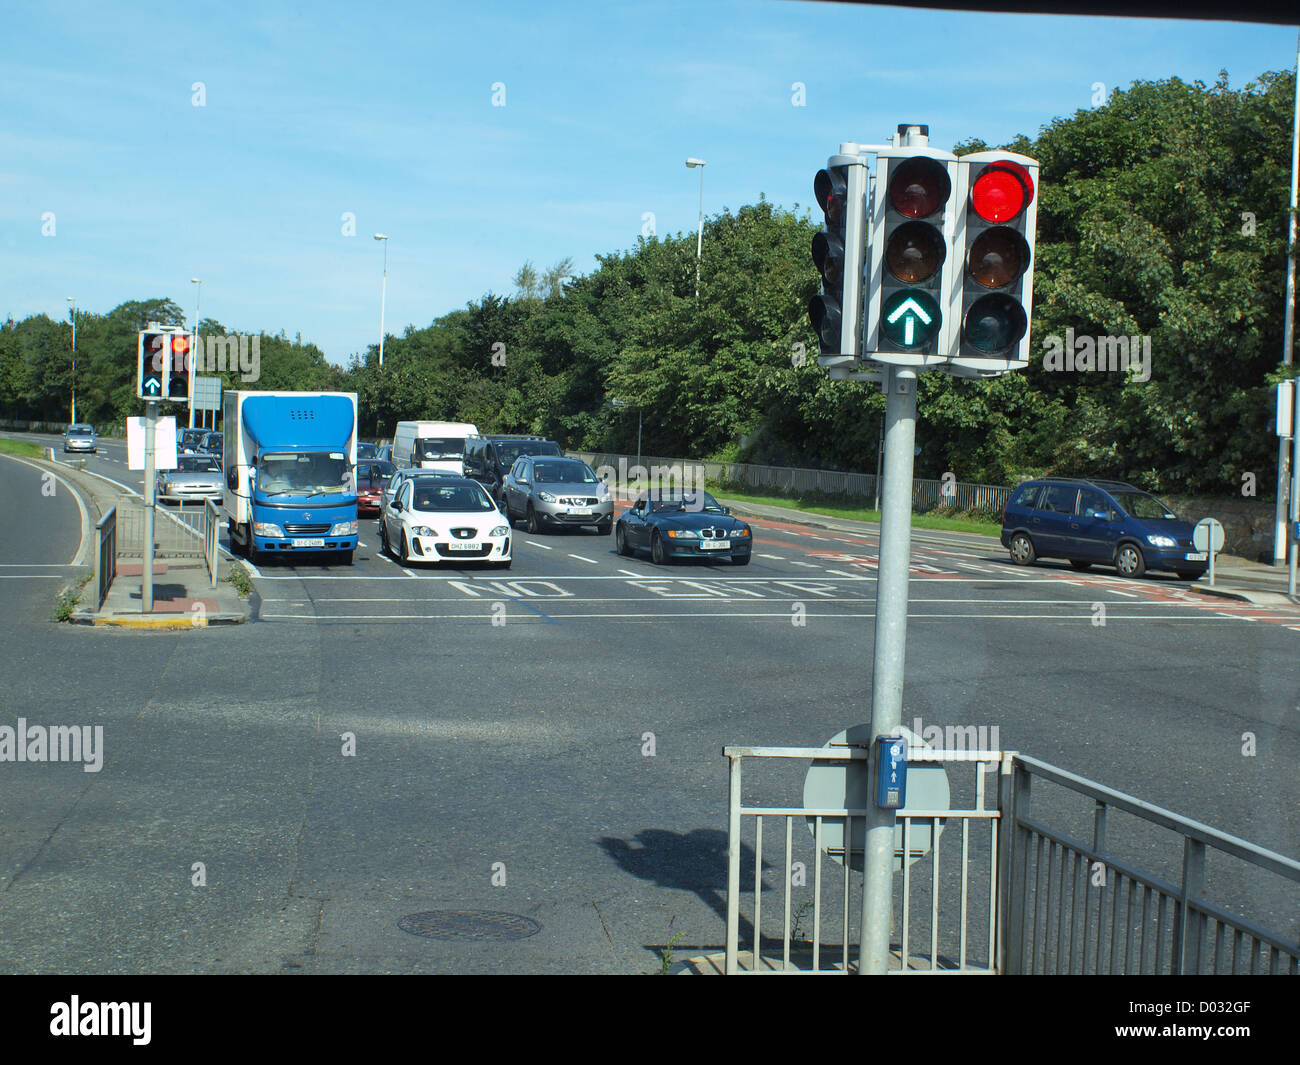 Suburban Verkehrsfluss, stationär an einer Straße Ampelkreuzung in der Stadt Galway im Westen Irlands. Stockfoto